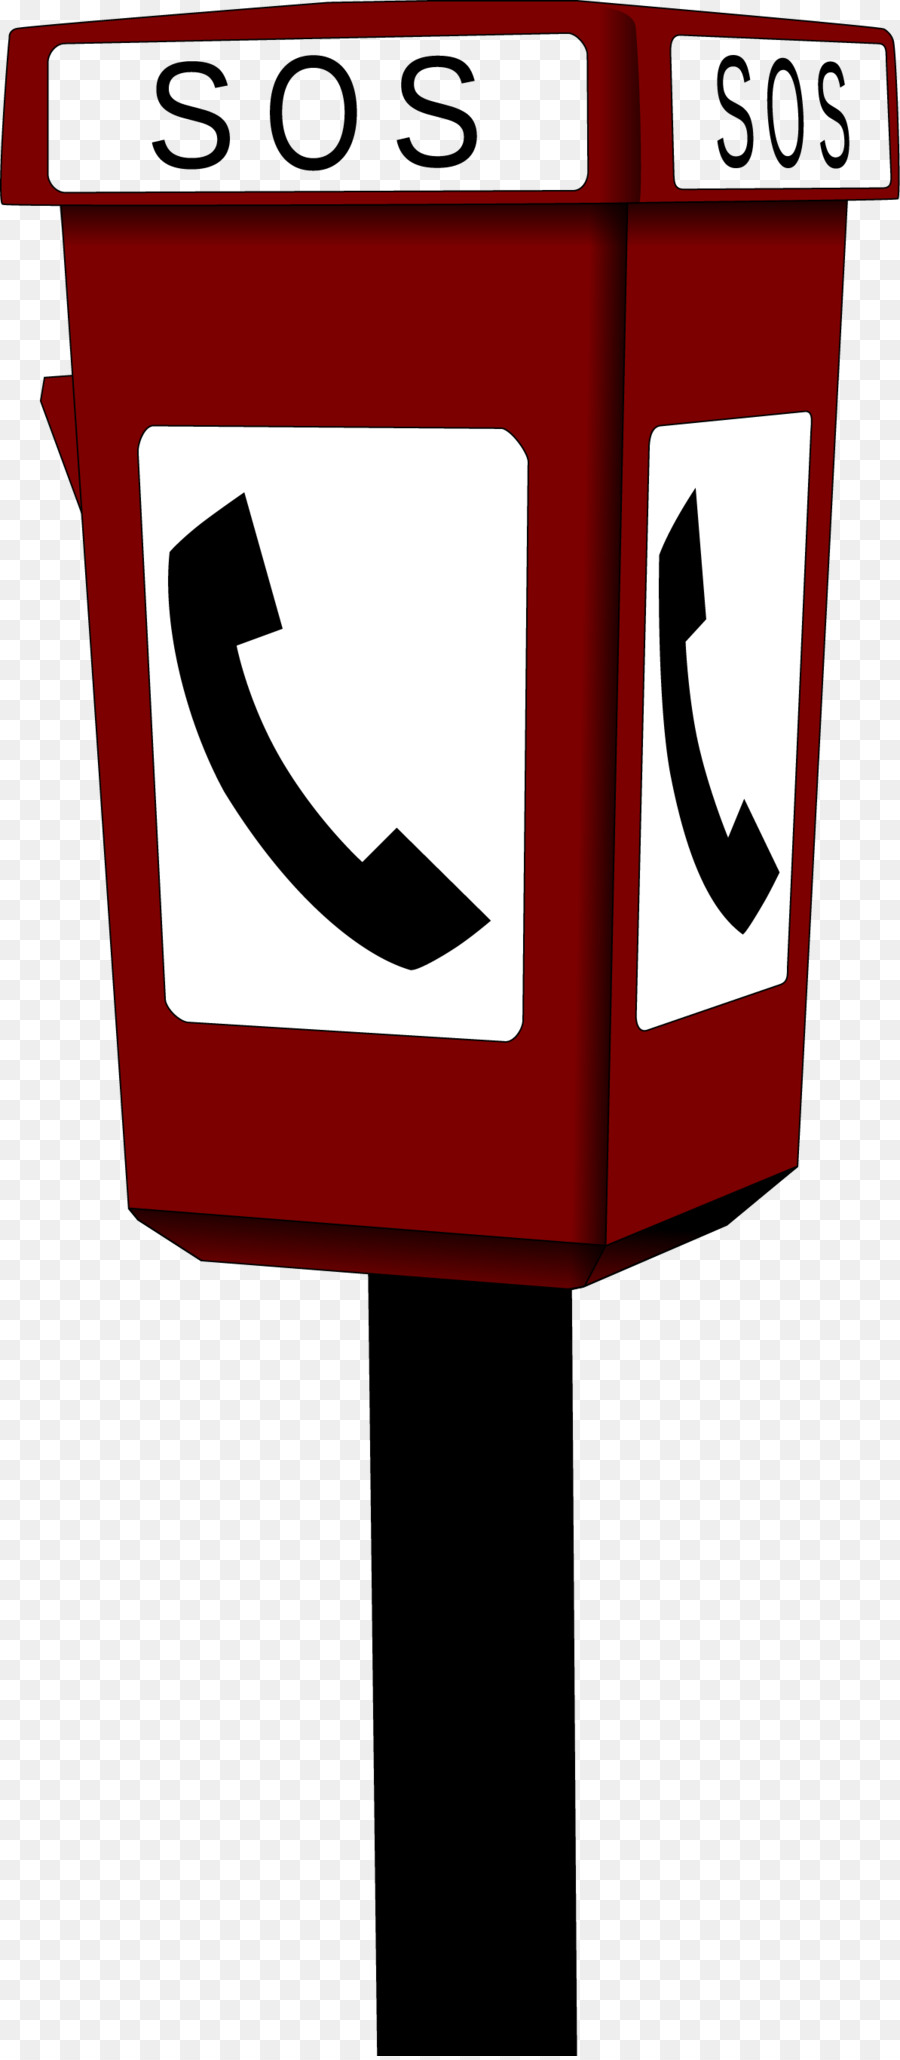 Cabina telefonica cabina telefonica Rossa Clip art - Vettore cabina del telefono